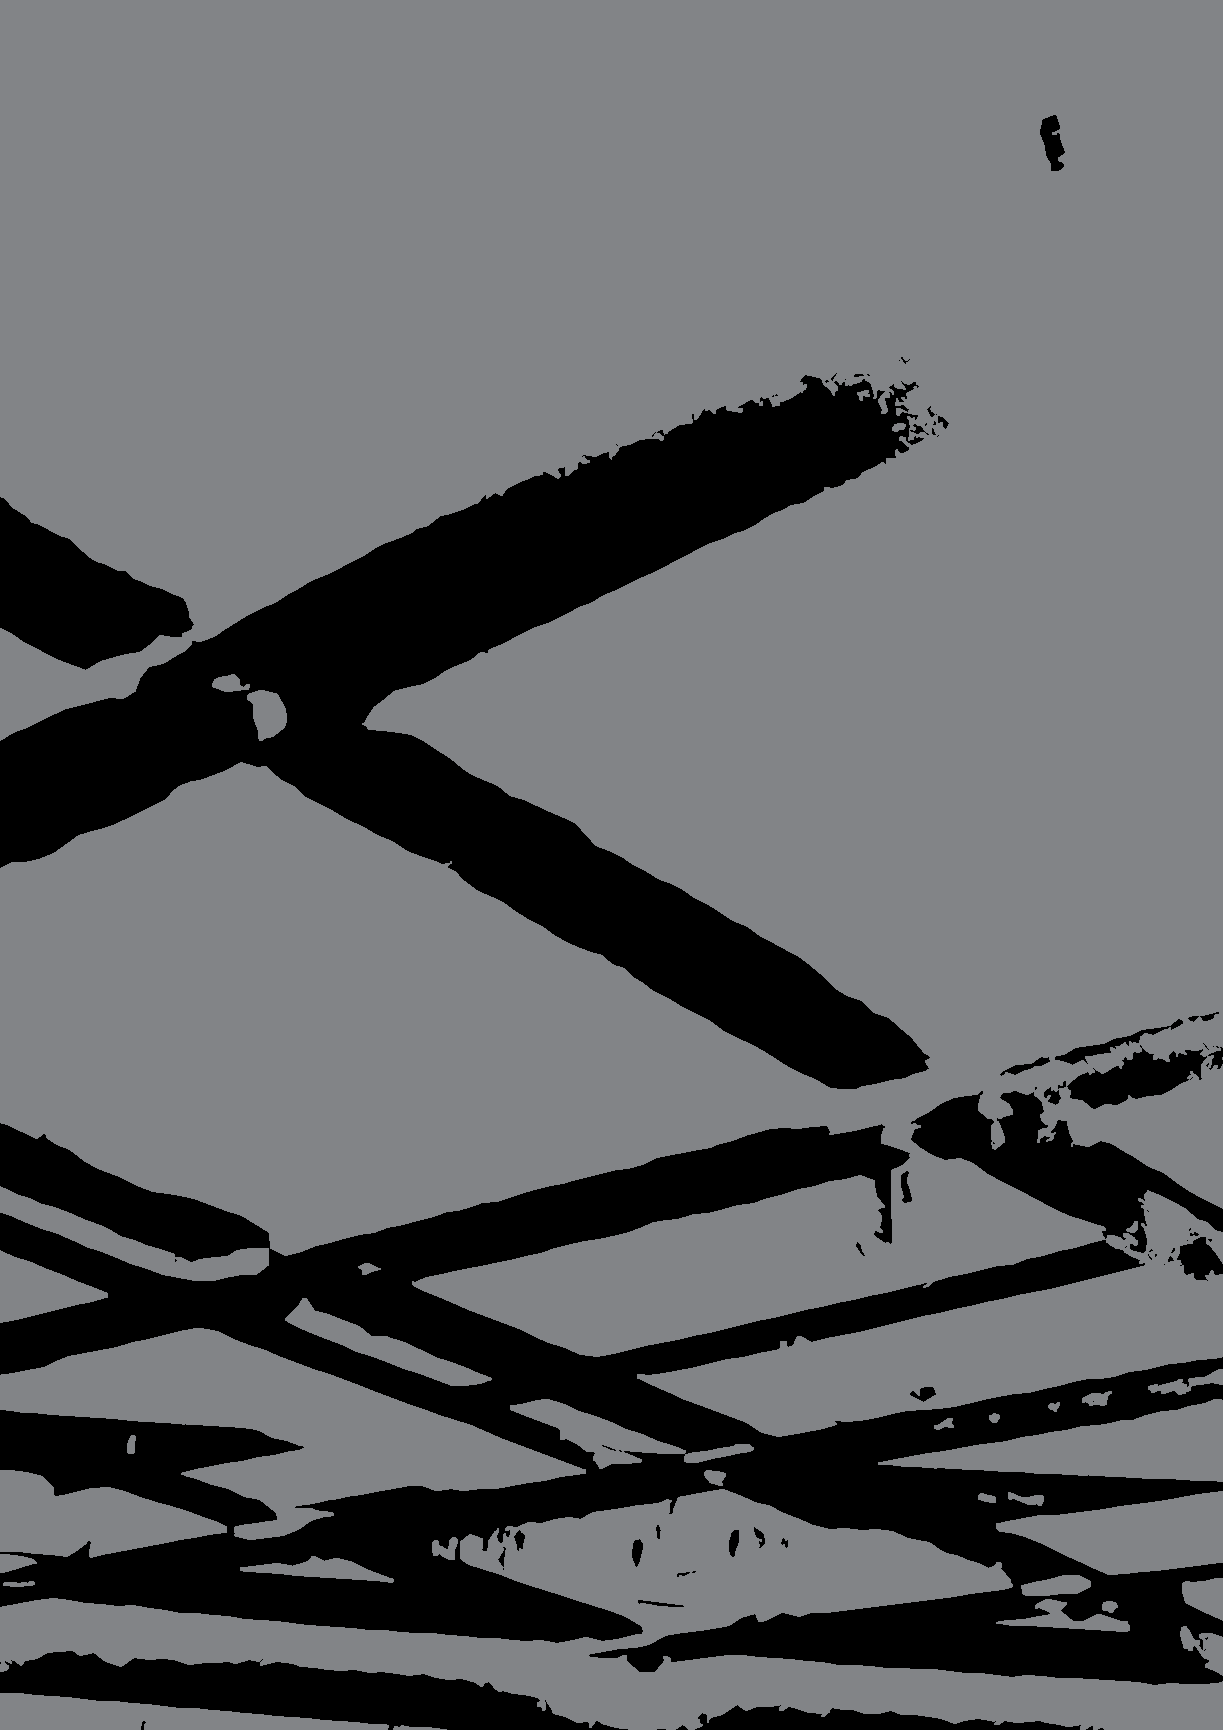 FIREFLY-LUCCIOLA Infrapunalämmitin rubiiniputkella Syttyy ja lämmittää välittömästi Säänkestävä IP65 (voidaan käyttää myös sateessa) Kevyt, nailonrakenteinen lämmitin, joka voidaan asentaa seinälle,